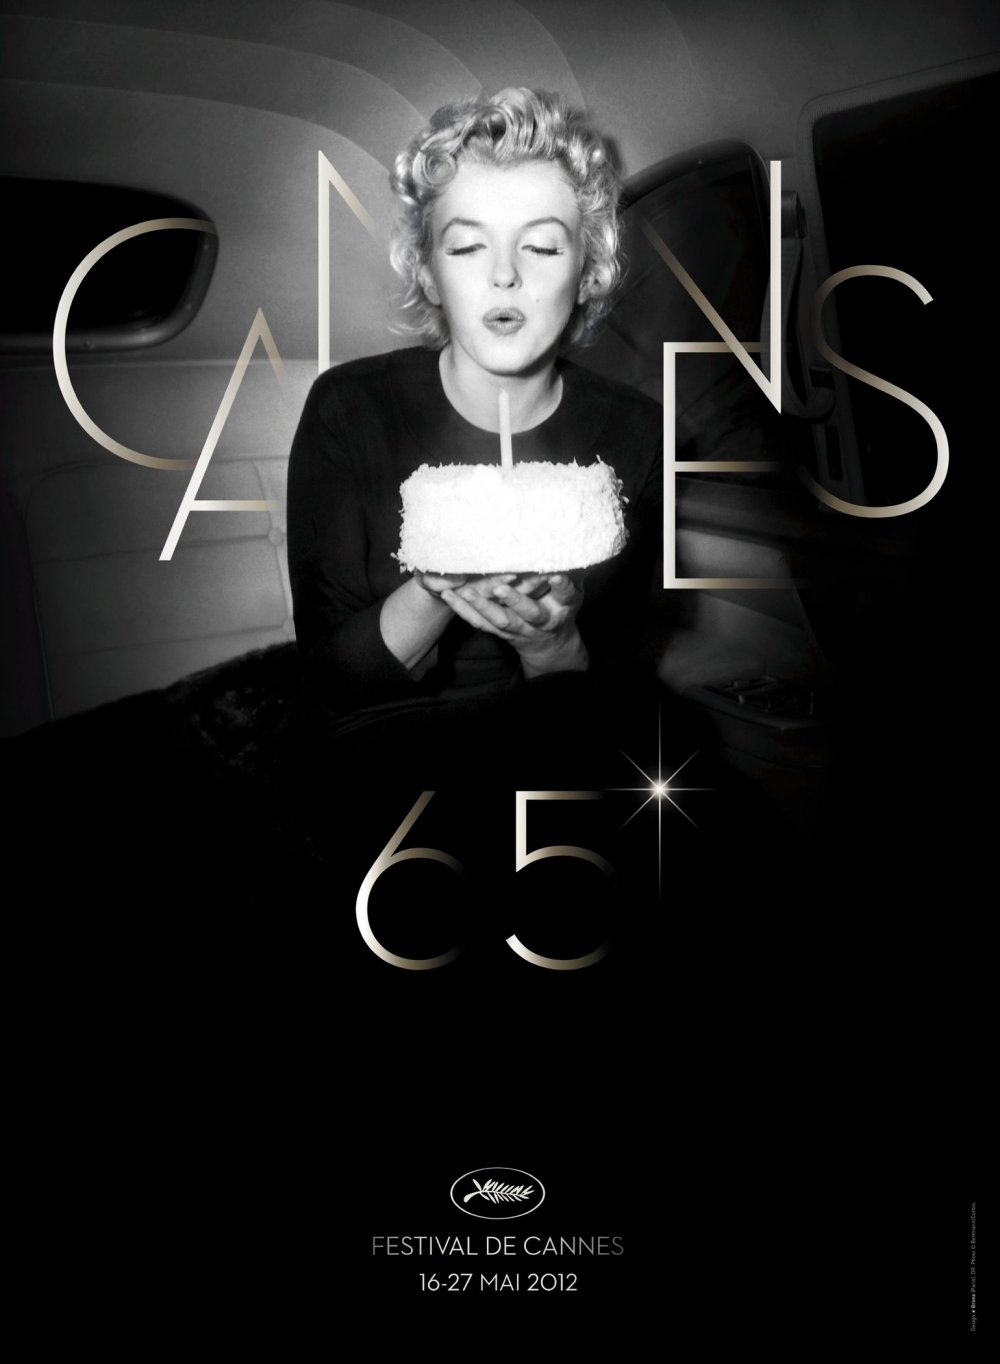 The Festival de Cannes’s 2012 poster